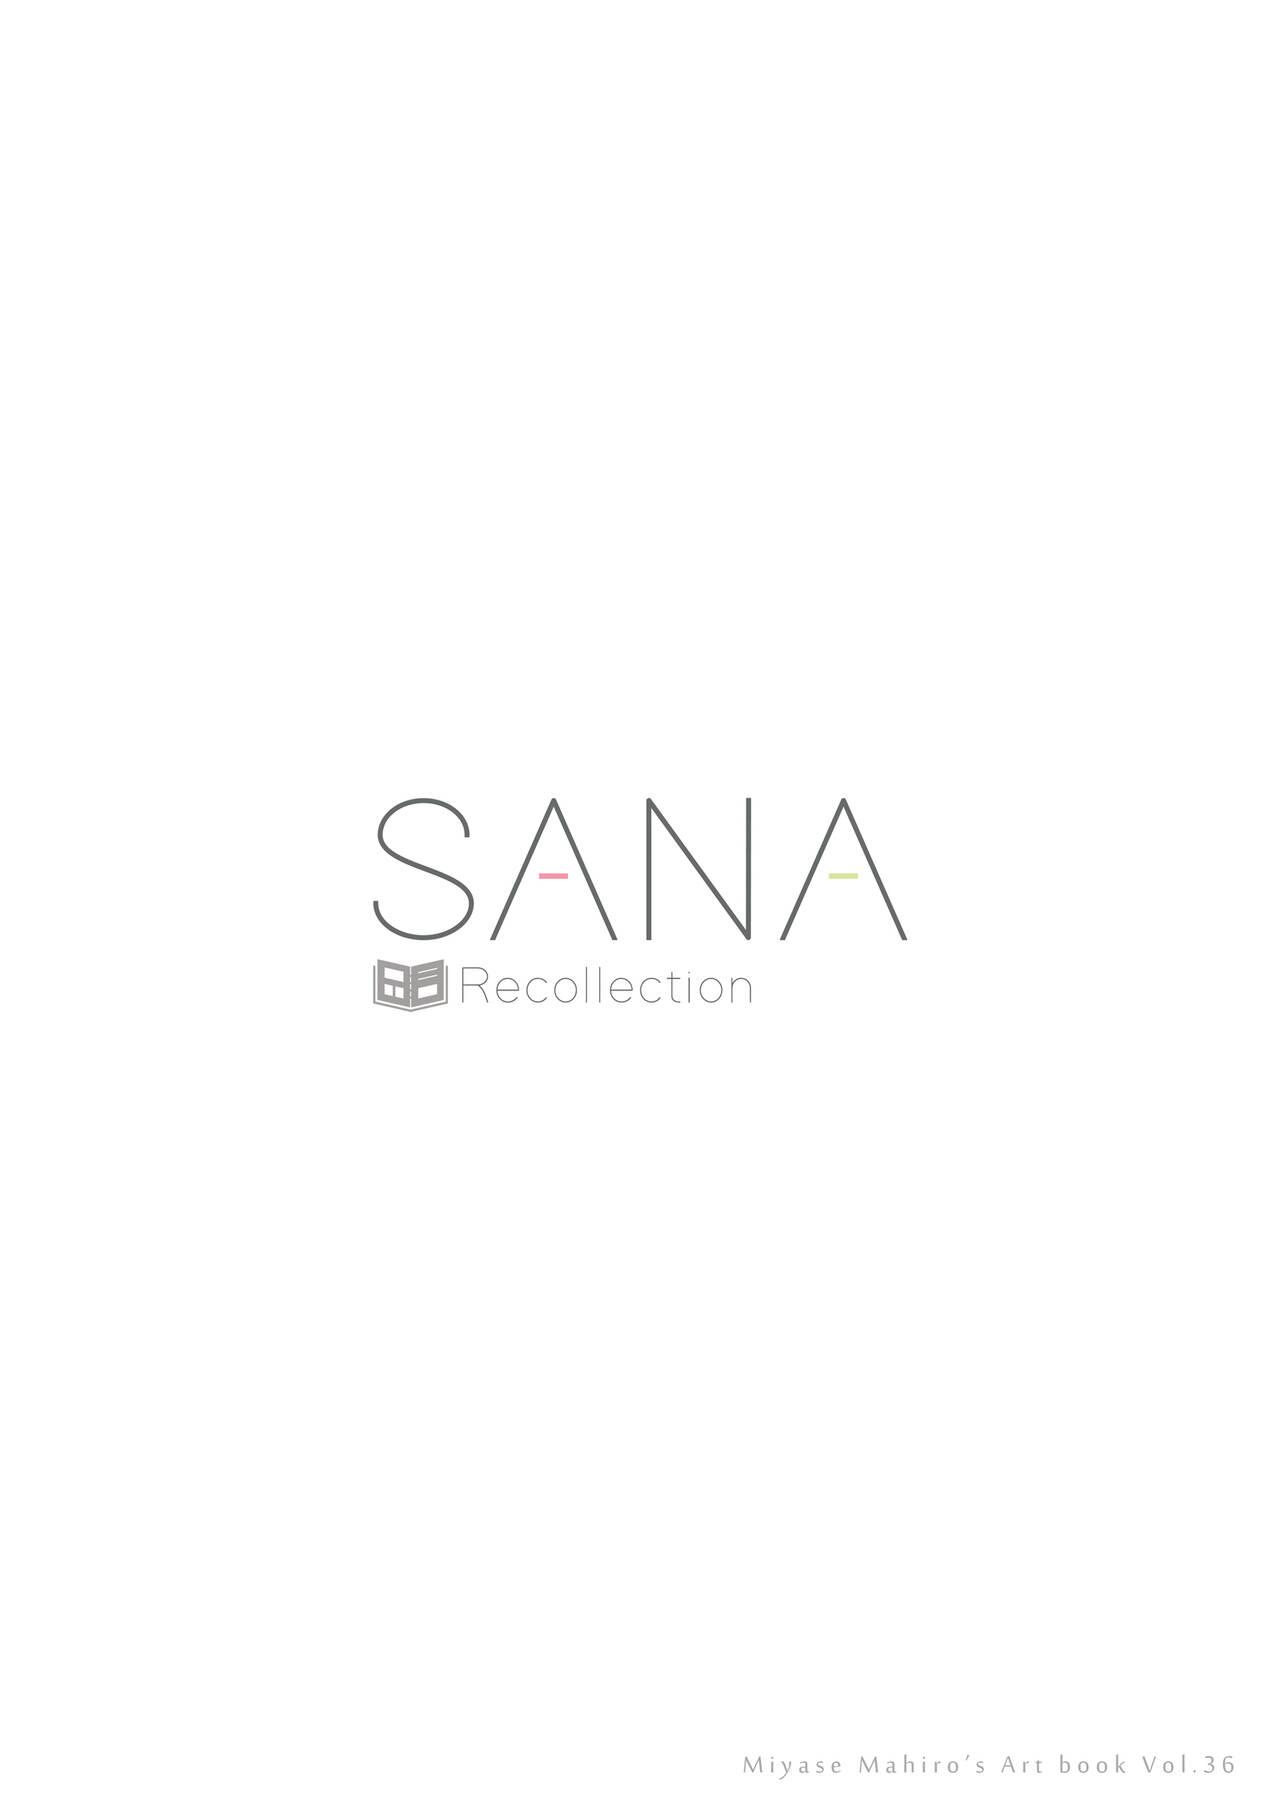 SANA-Recollection 87